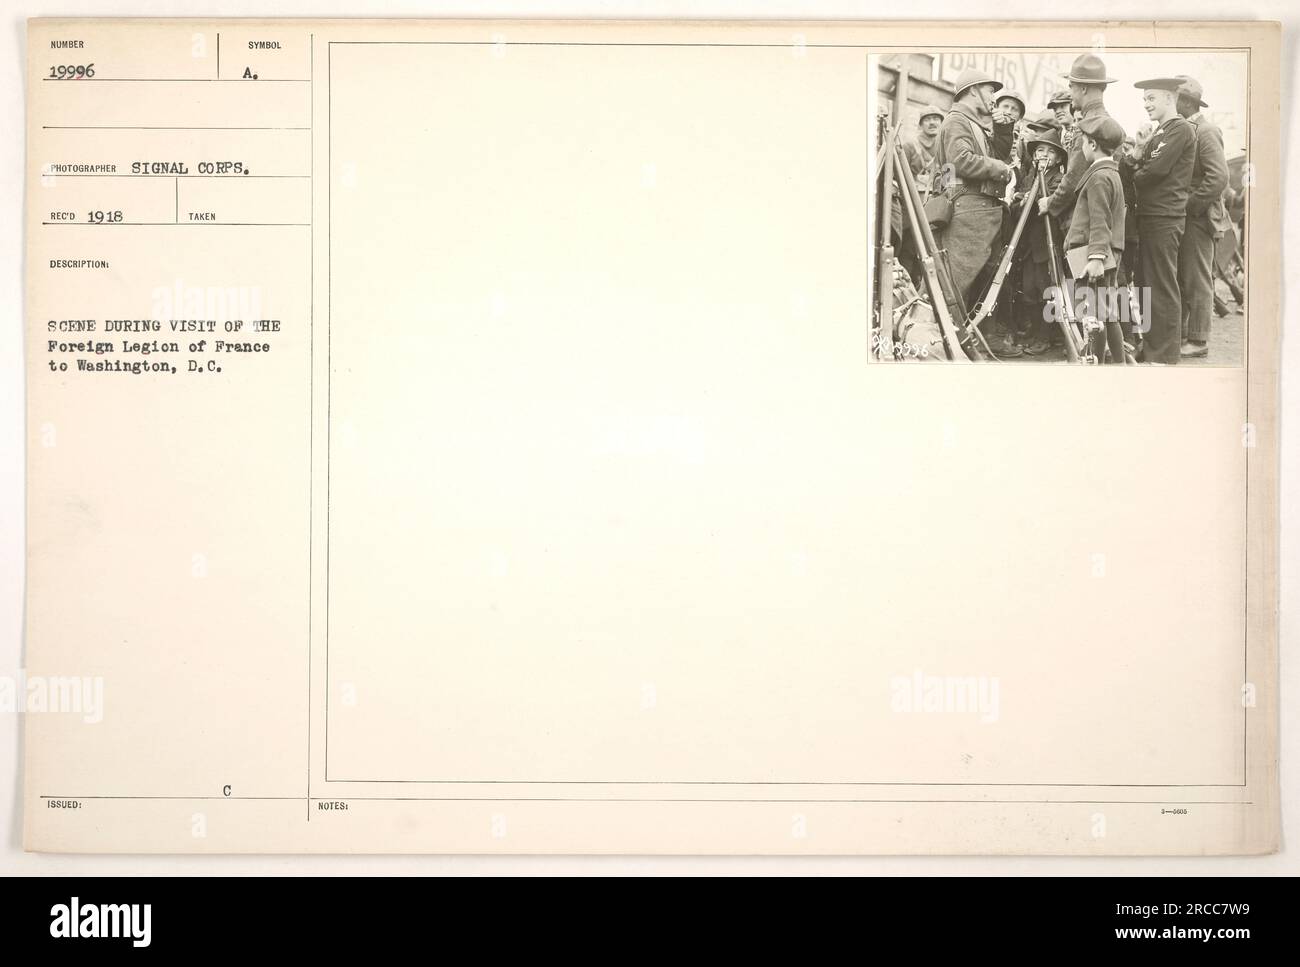 Amerikanische Soldaten der französischen Außenlegion besuchen Washington, D.C. während des Ersten Weltkriegs Das Bild zeigt die Soldaten in Uniform, die möglicherweise an einer Zeremonie oder Parade teilnehmen. Das Foto wurde 1918 von einem Fotografen des Signalkorps aufgenommen. Stockfoto